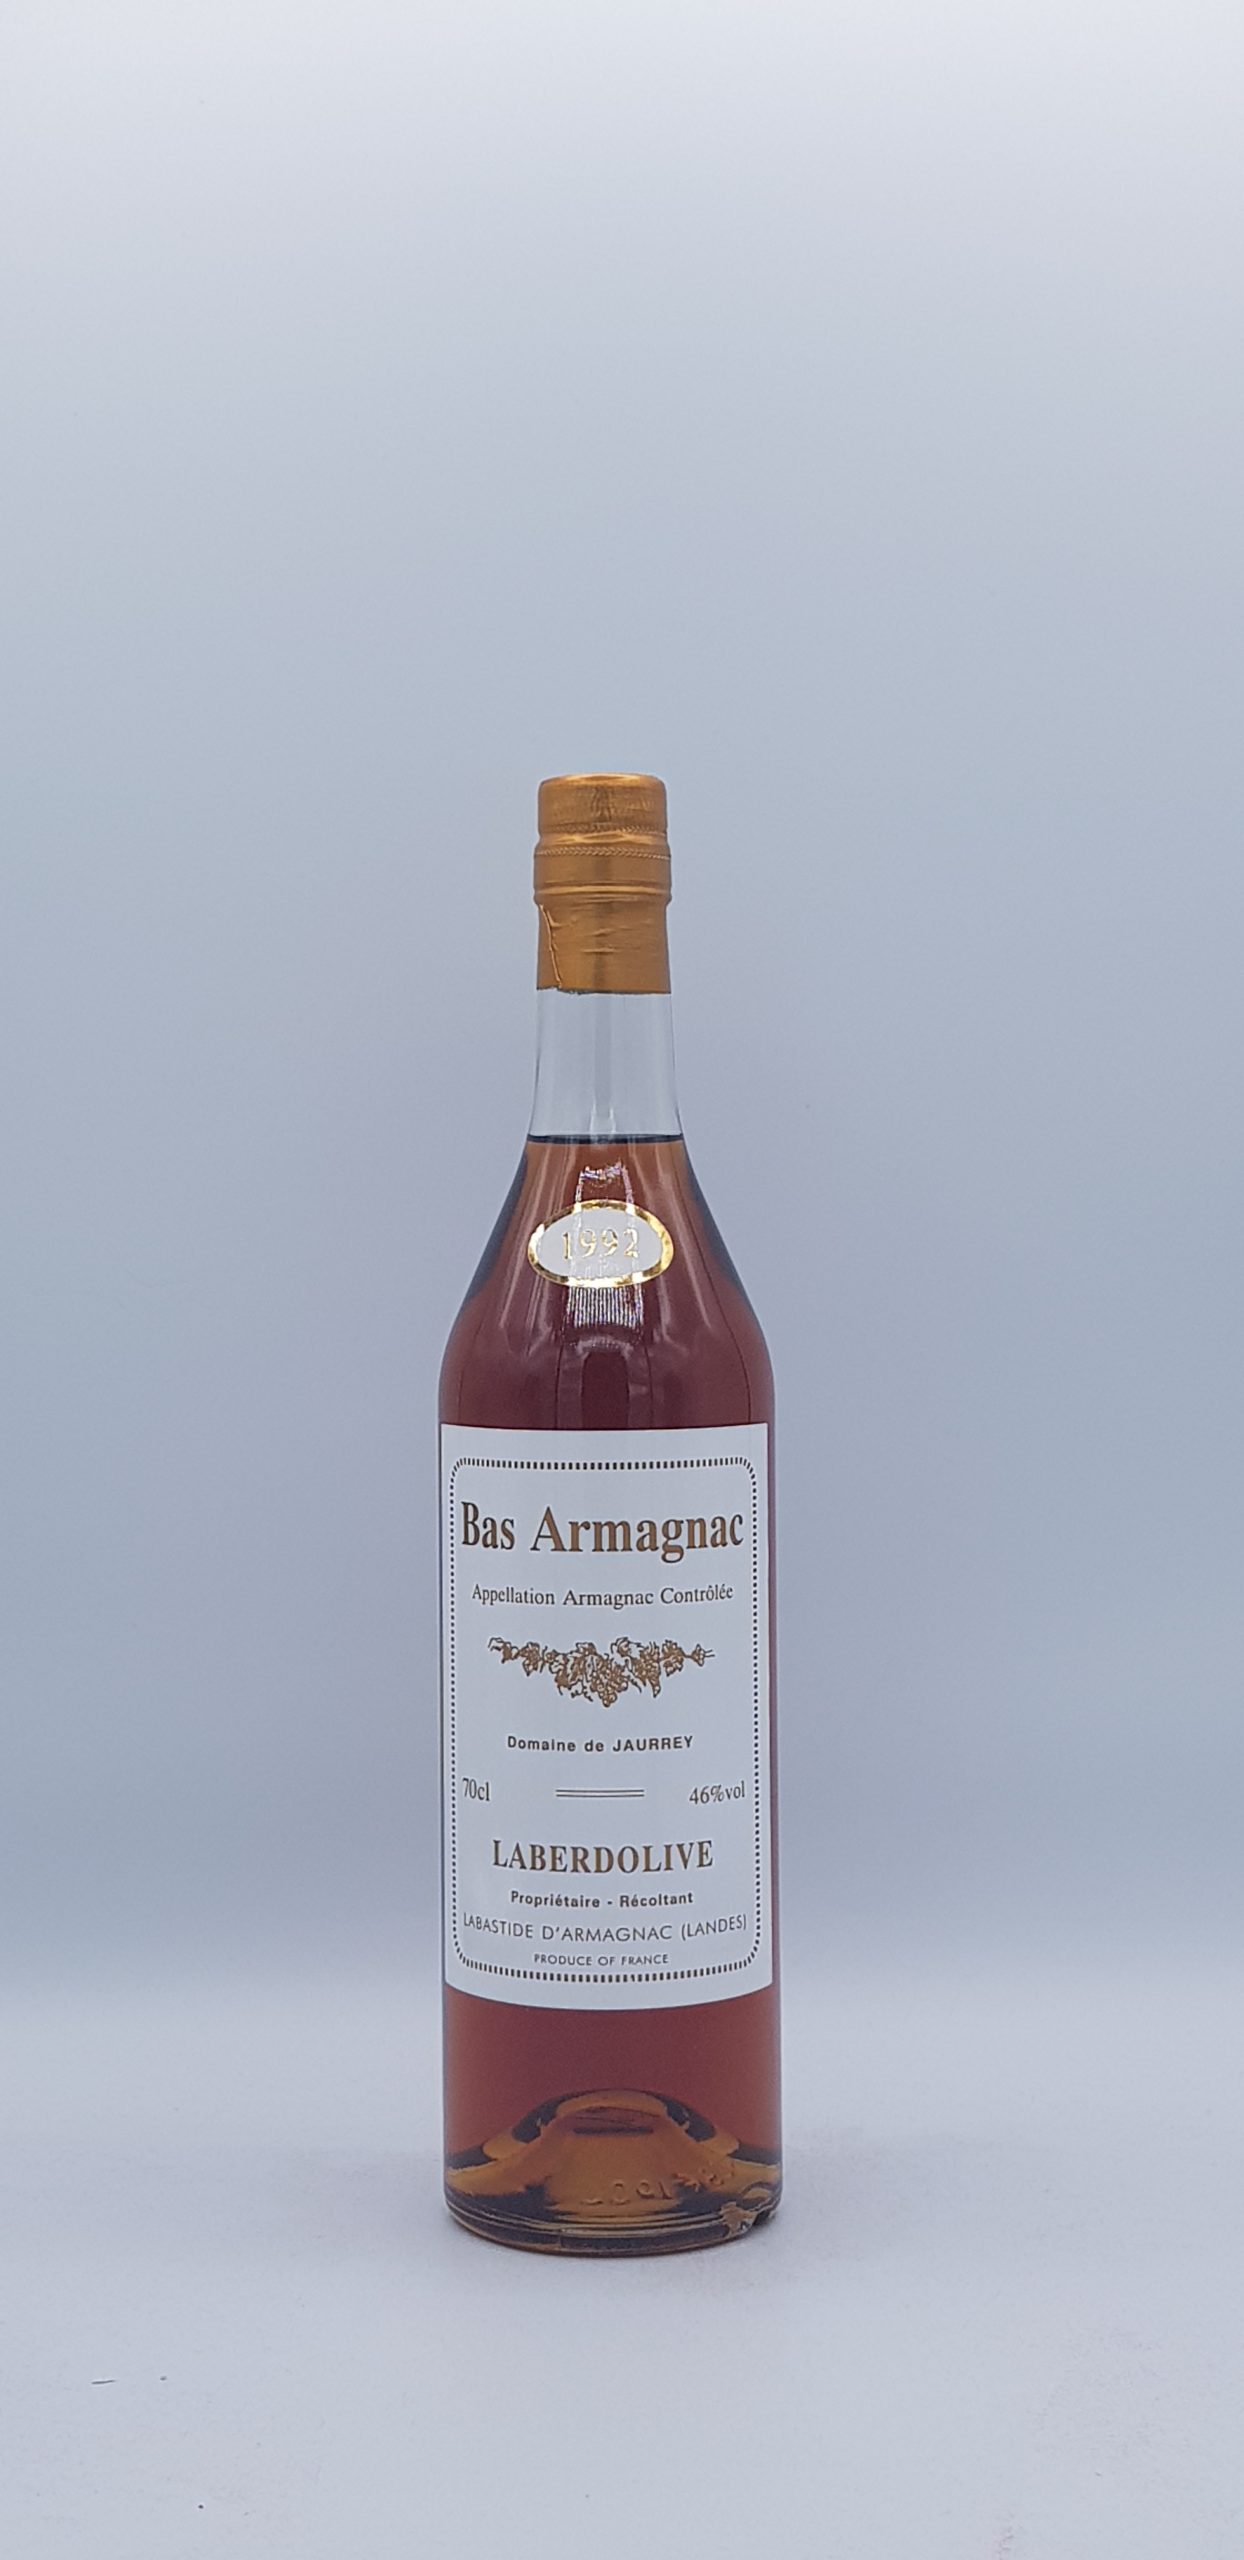 Bas-Armagnac 1992 Domaine De Jaurrey Laberdolive 46%